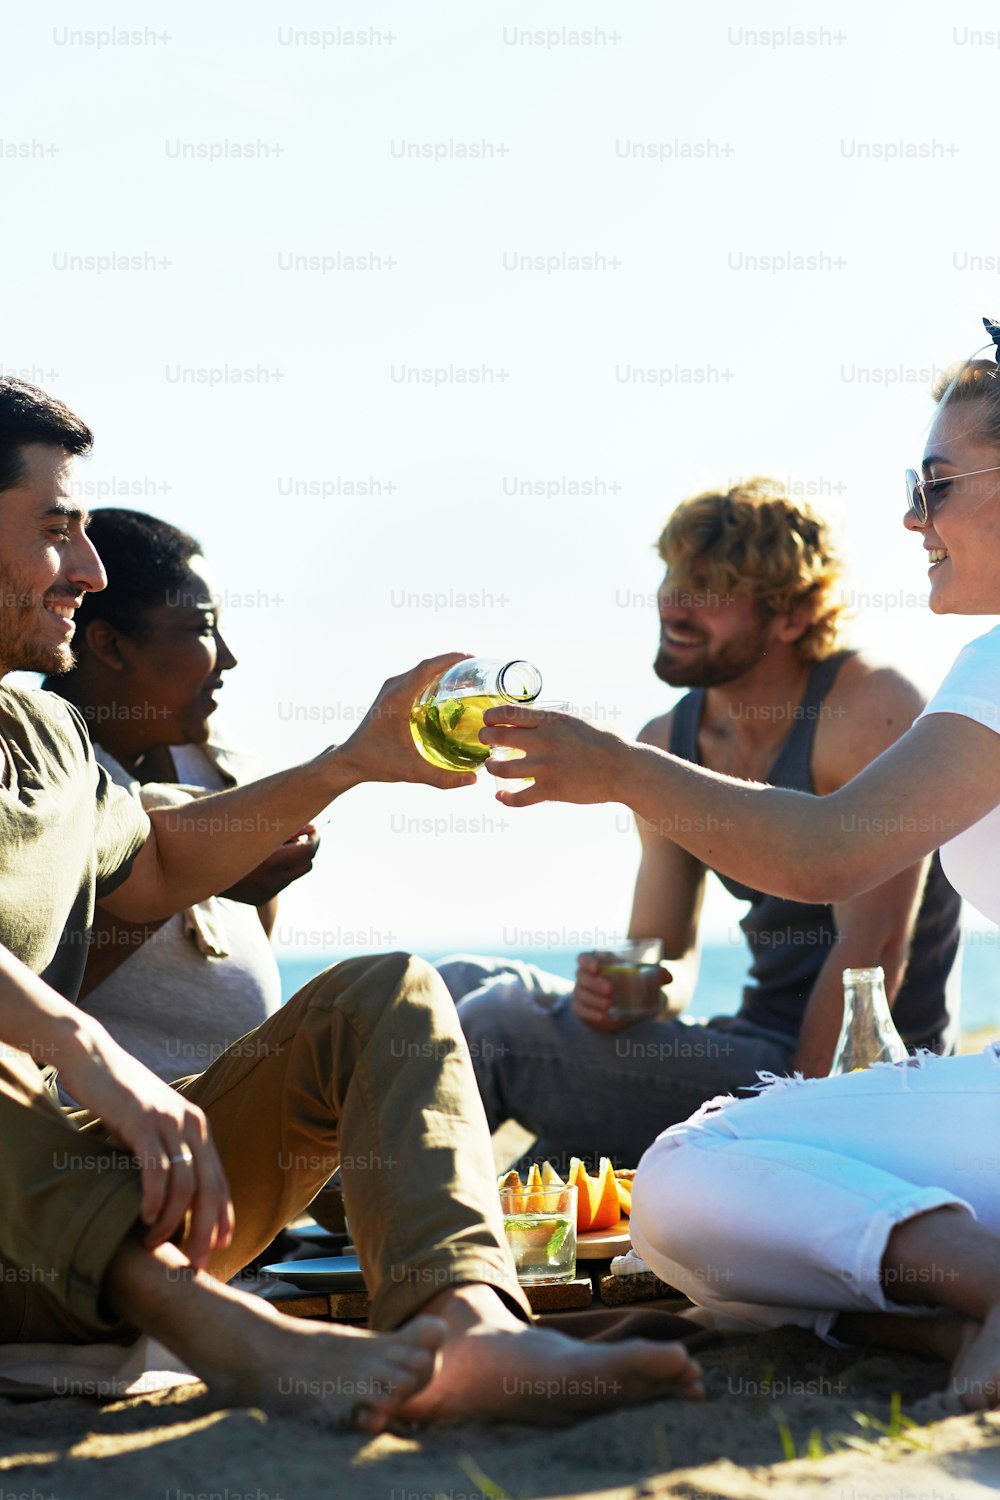 Uno de los chicos que vierten limonada de la botella al vaso de la chica durante un picnic junto al mar